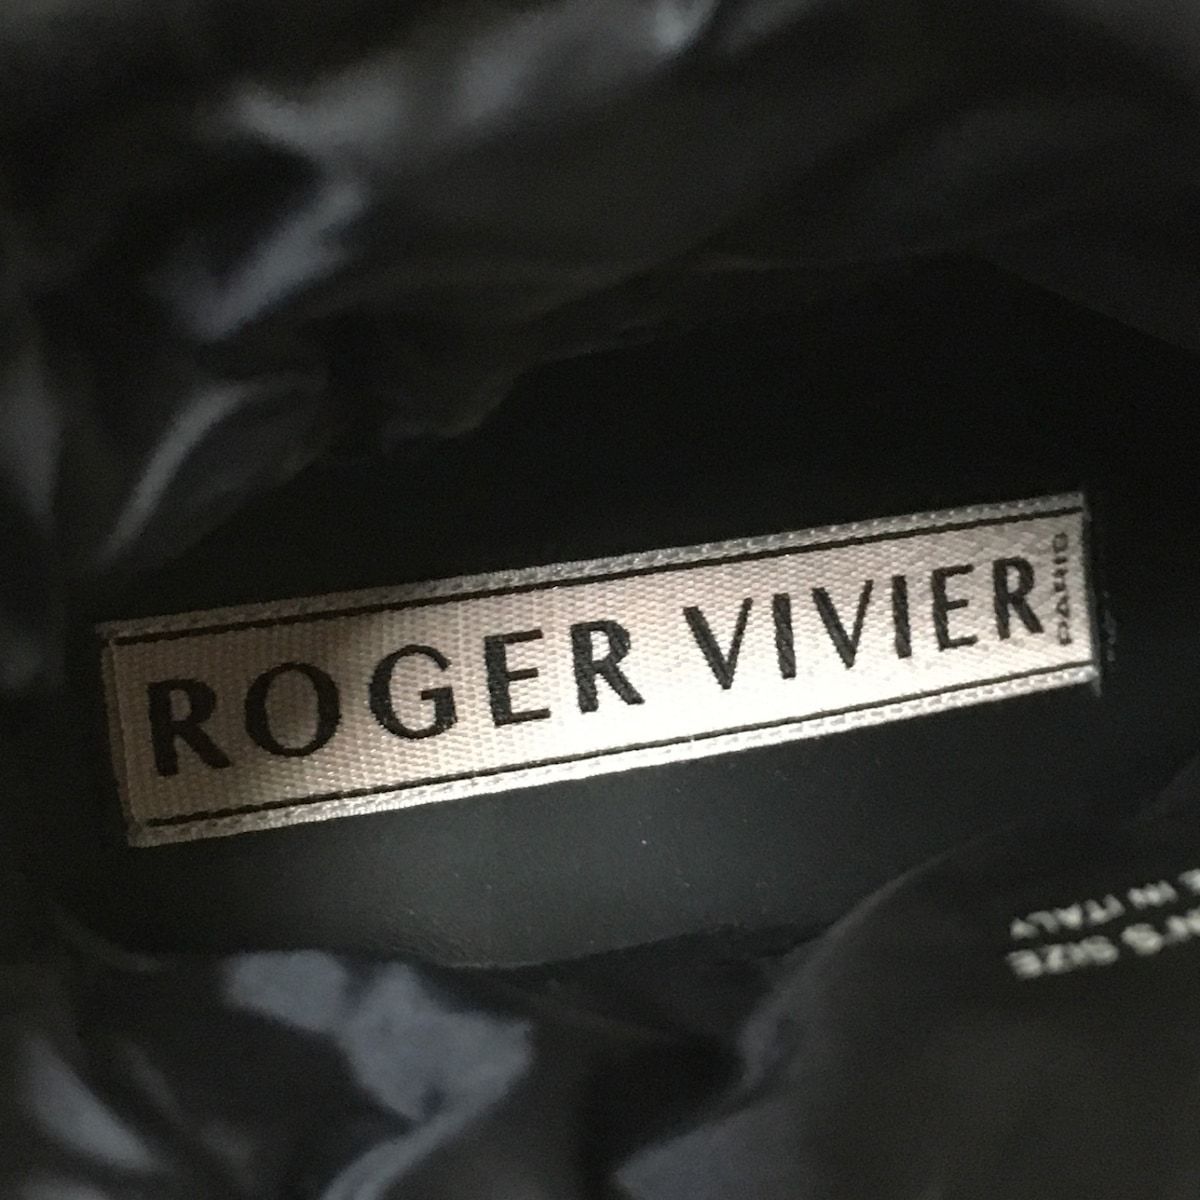 RogerVivier(ロジェヴィヴィエ) ショートブーツ 37 レディース - 黒×白 ビジュー ナイロン - メルカリ